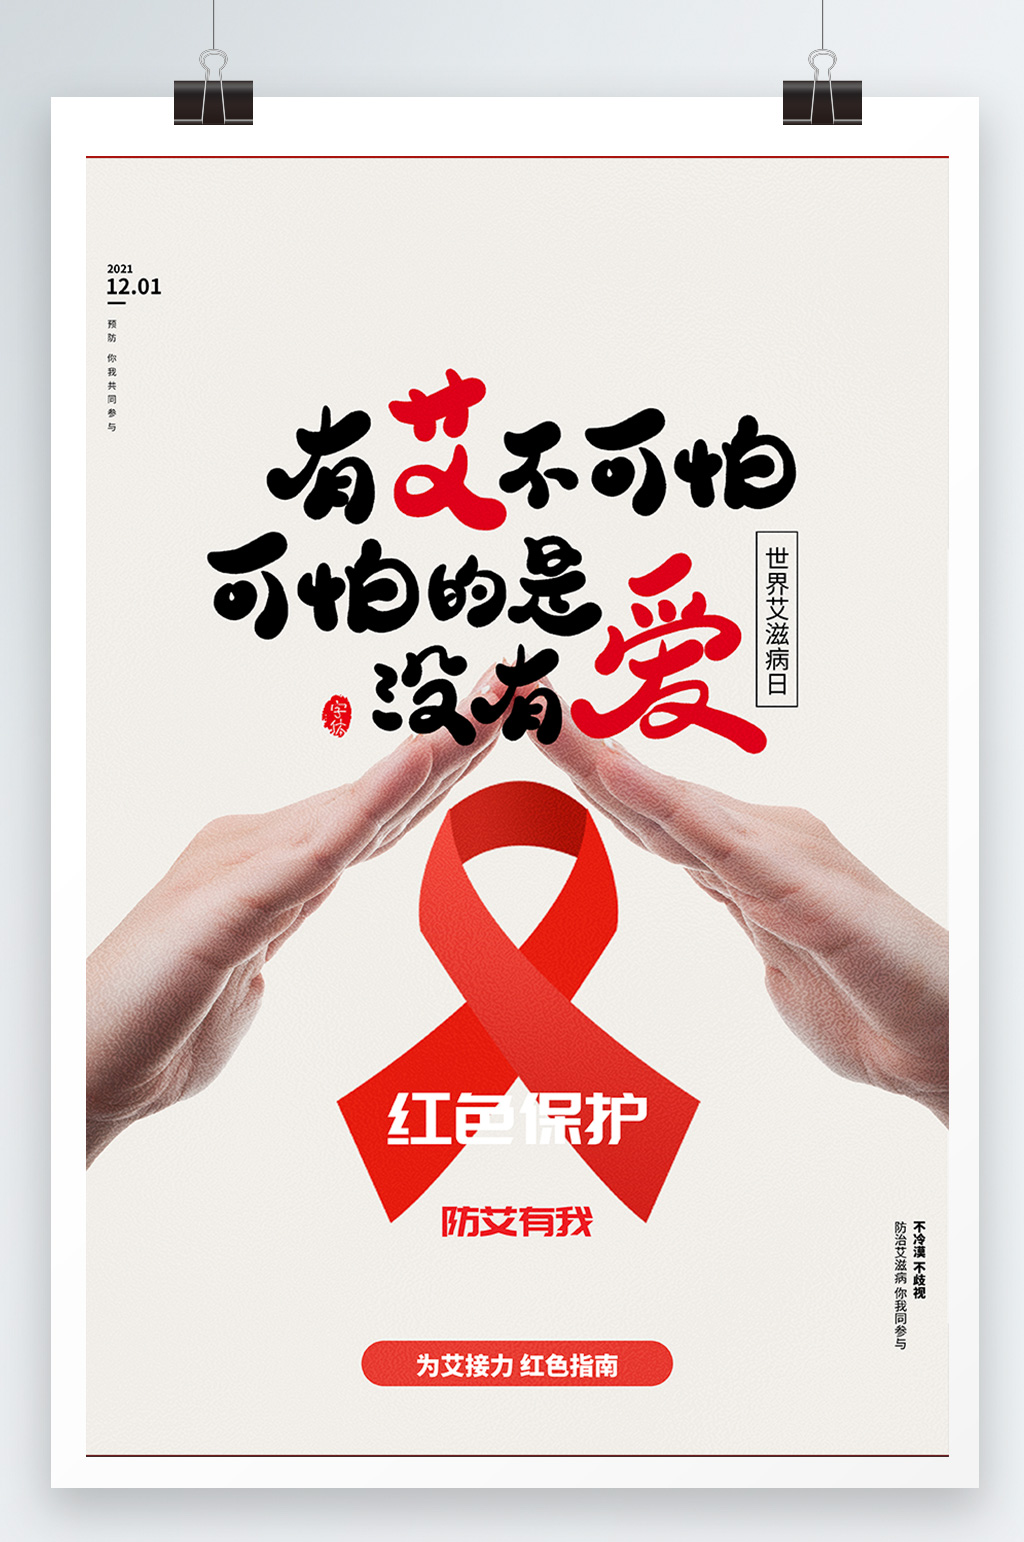 艾滋病宣传标语创意图片